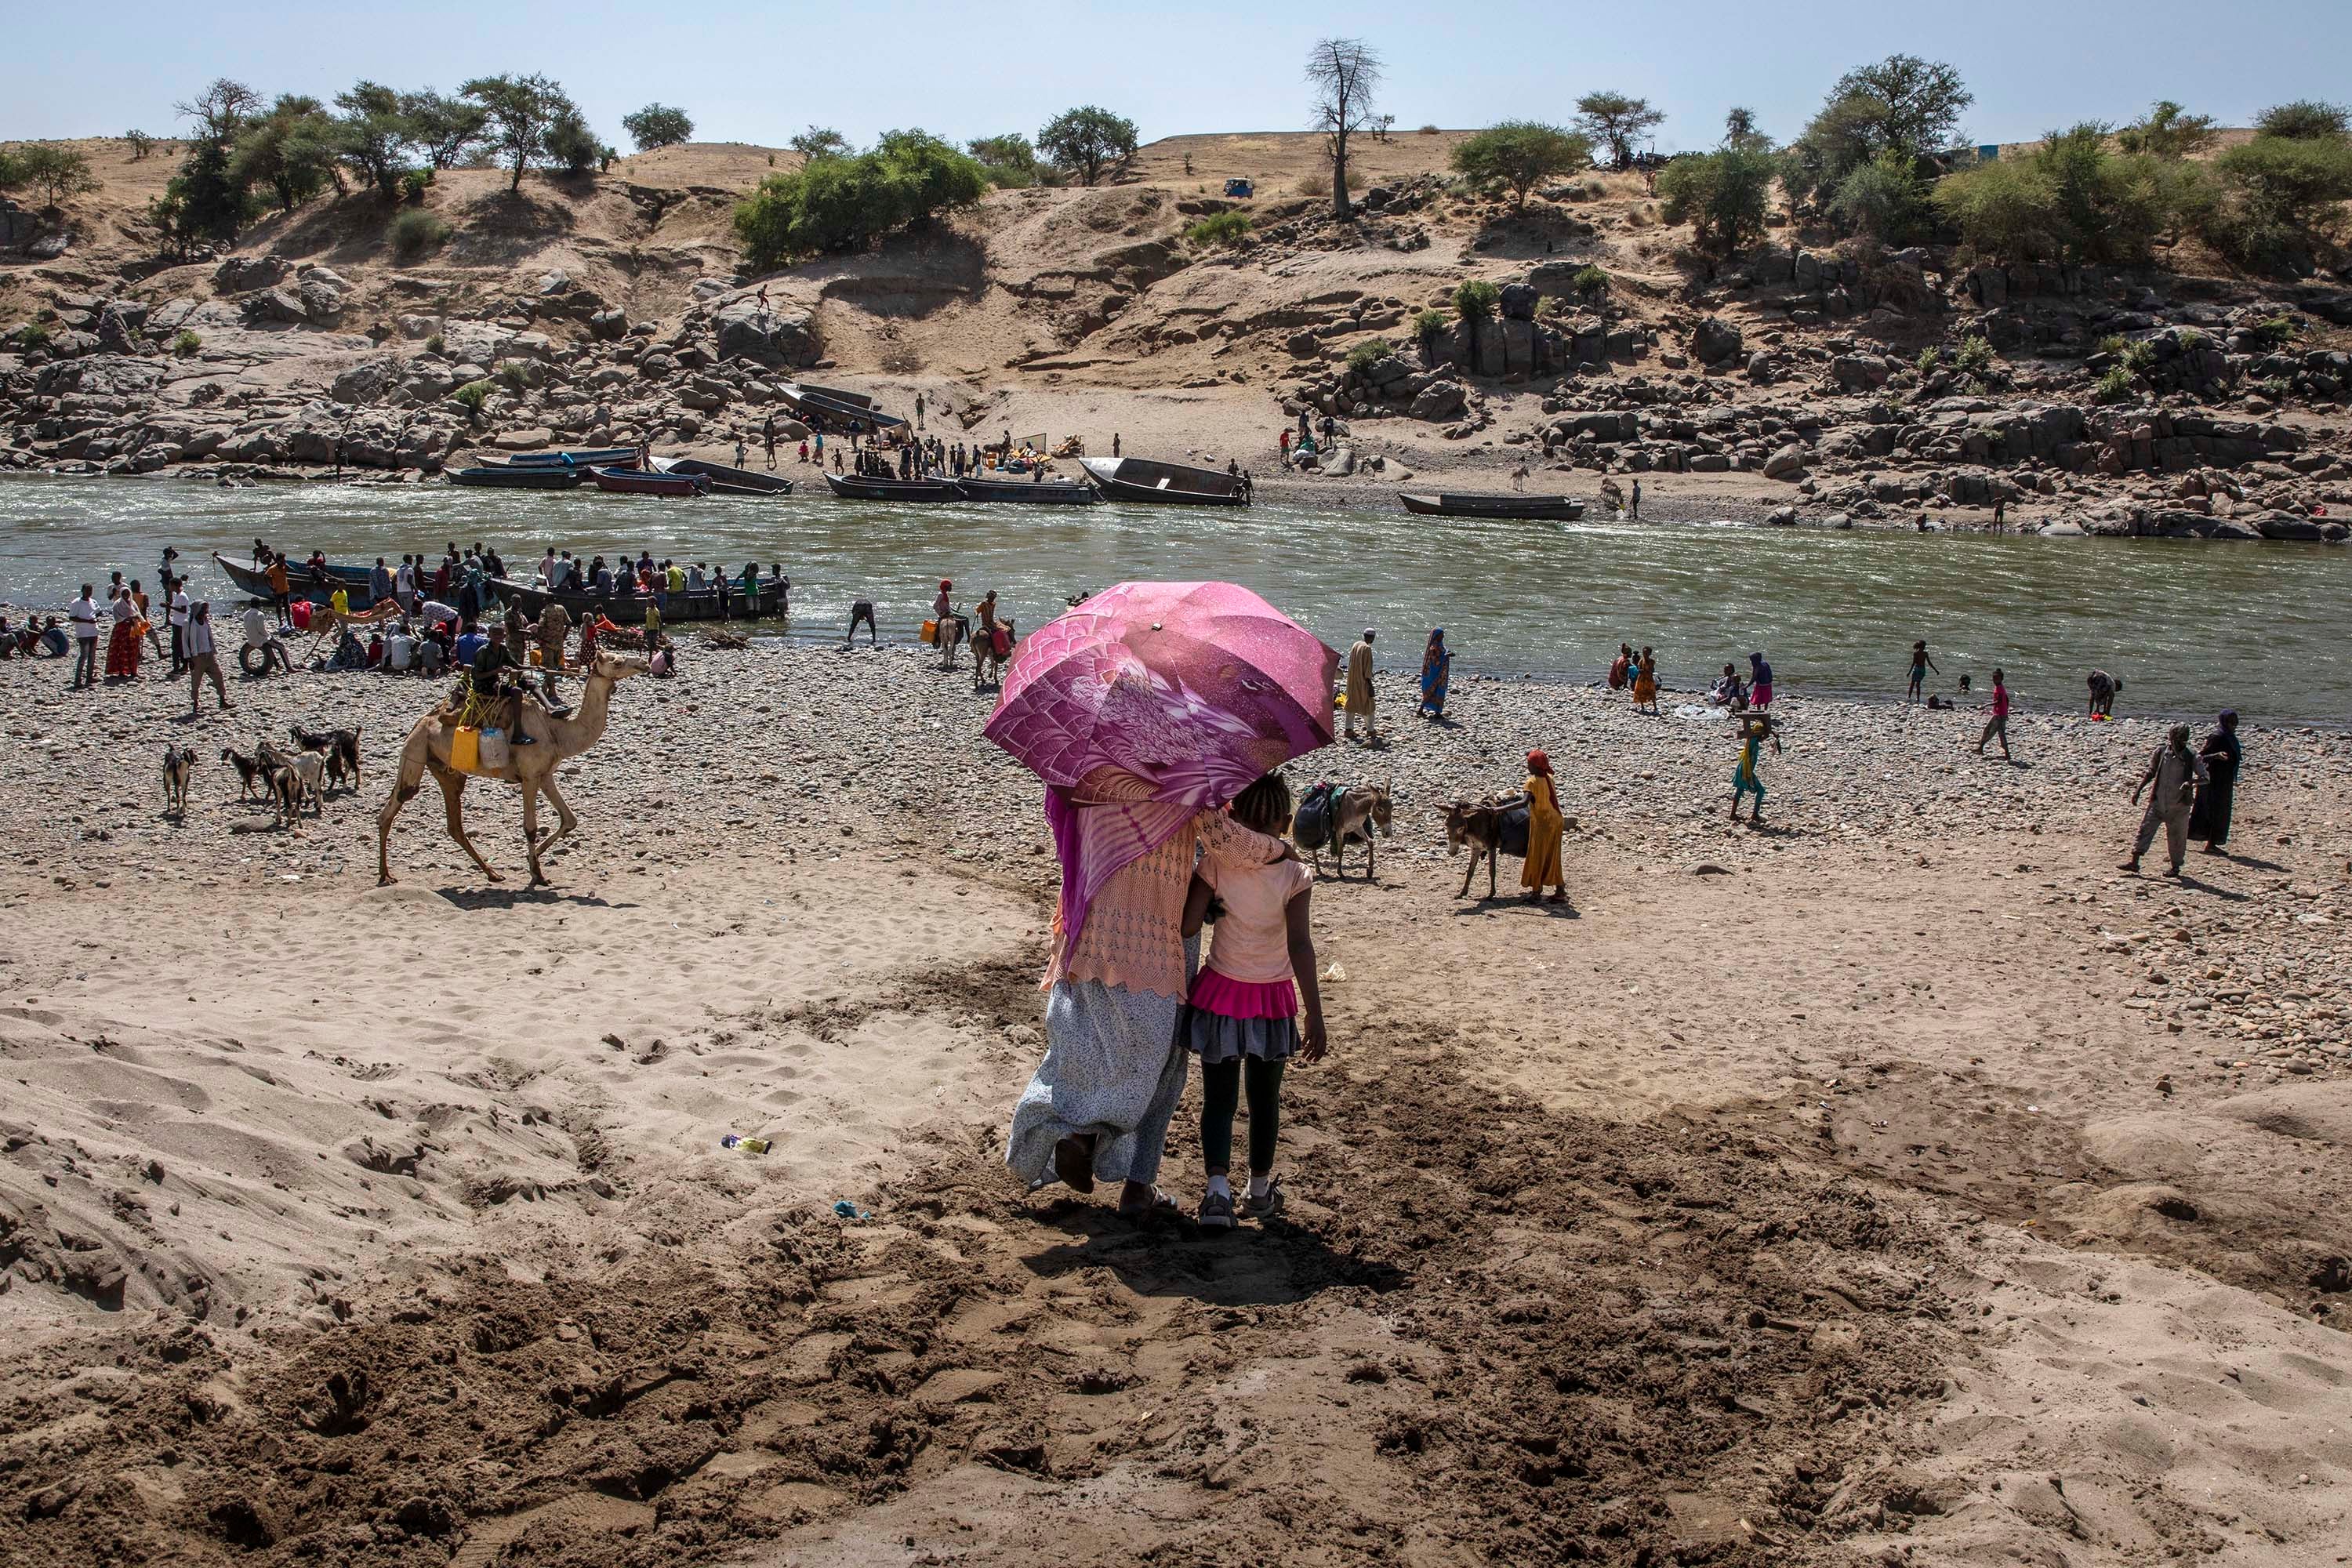 Des réfugiés ayant fui le conflit dans la région du Tigré en Éthiopie, en traversant la rivière Tekeze marquant la frontière entre l'Éthiopie et le Soudan, photographiés peu après leur arrivée sur le territoire soudanais, près de Hamdayet (est du Soudan), le 21 novembre 2020. 